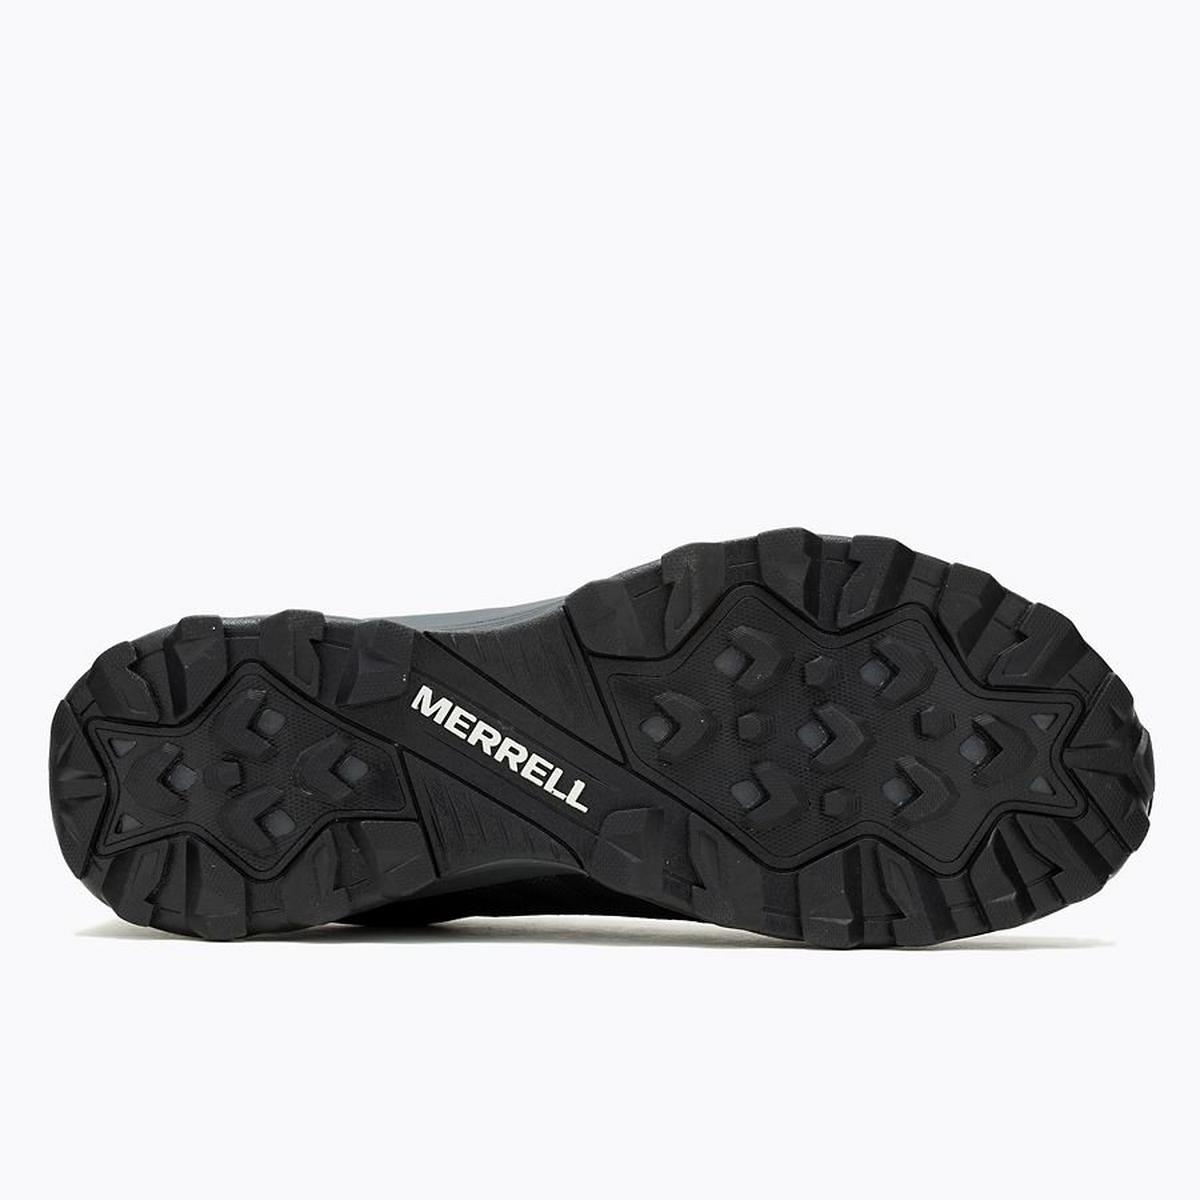 Merrell Men's Speed Eco Waterproof Walking Shoe - Black